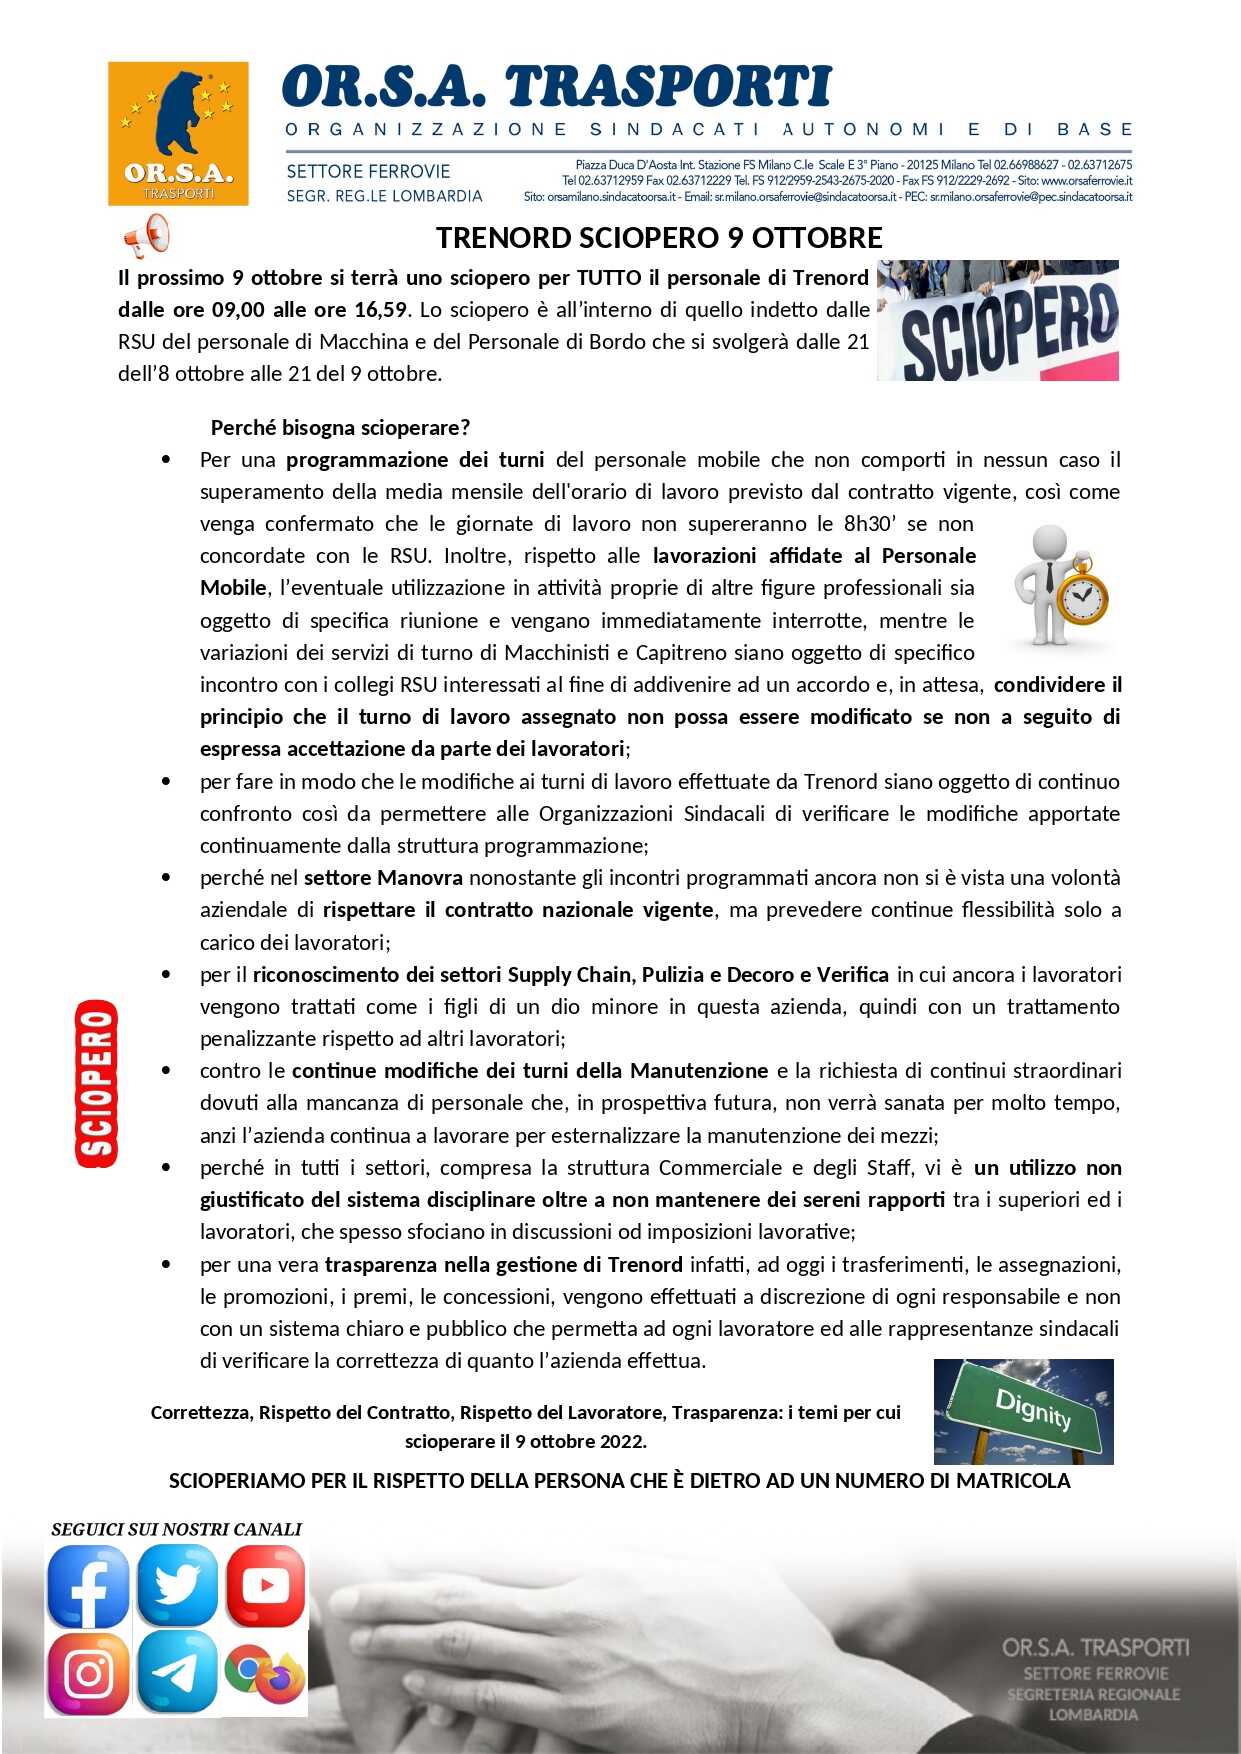 Trenord Sciopero ORSA 9 Ottobre page 0001